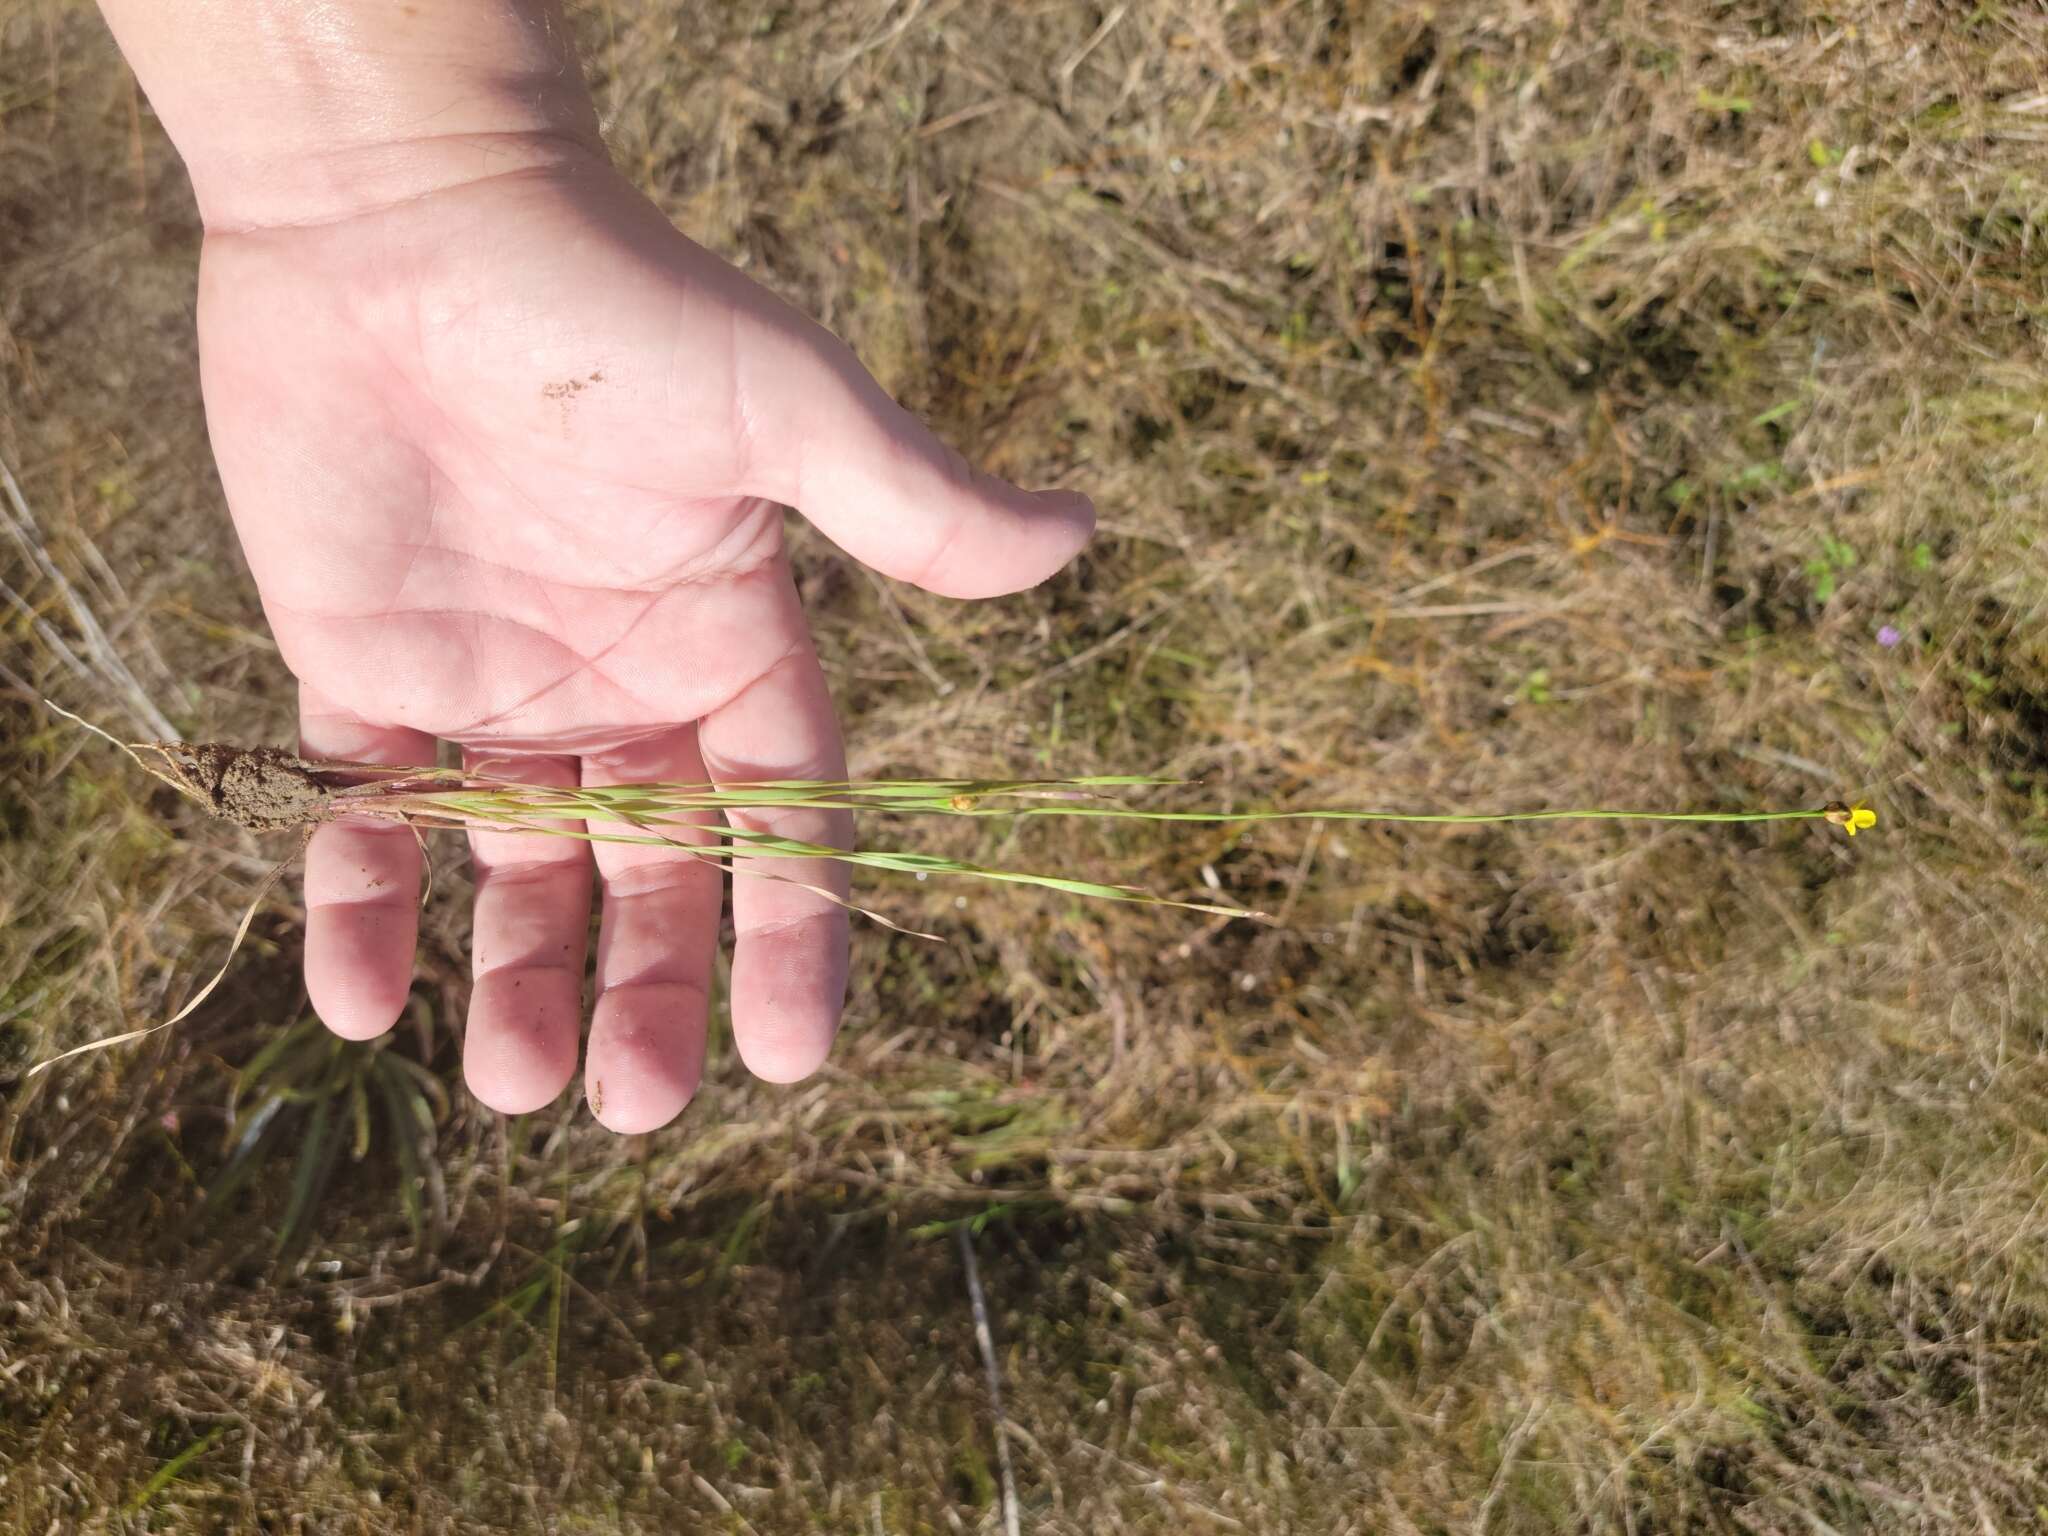 Image of Limestone yelloweyed grass